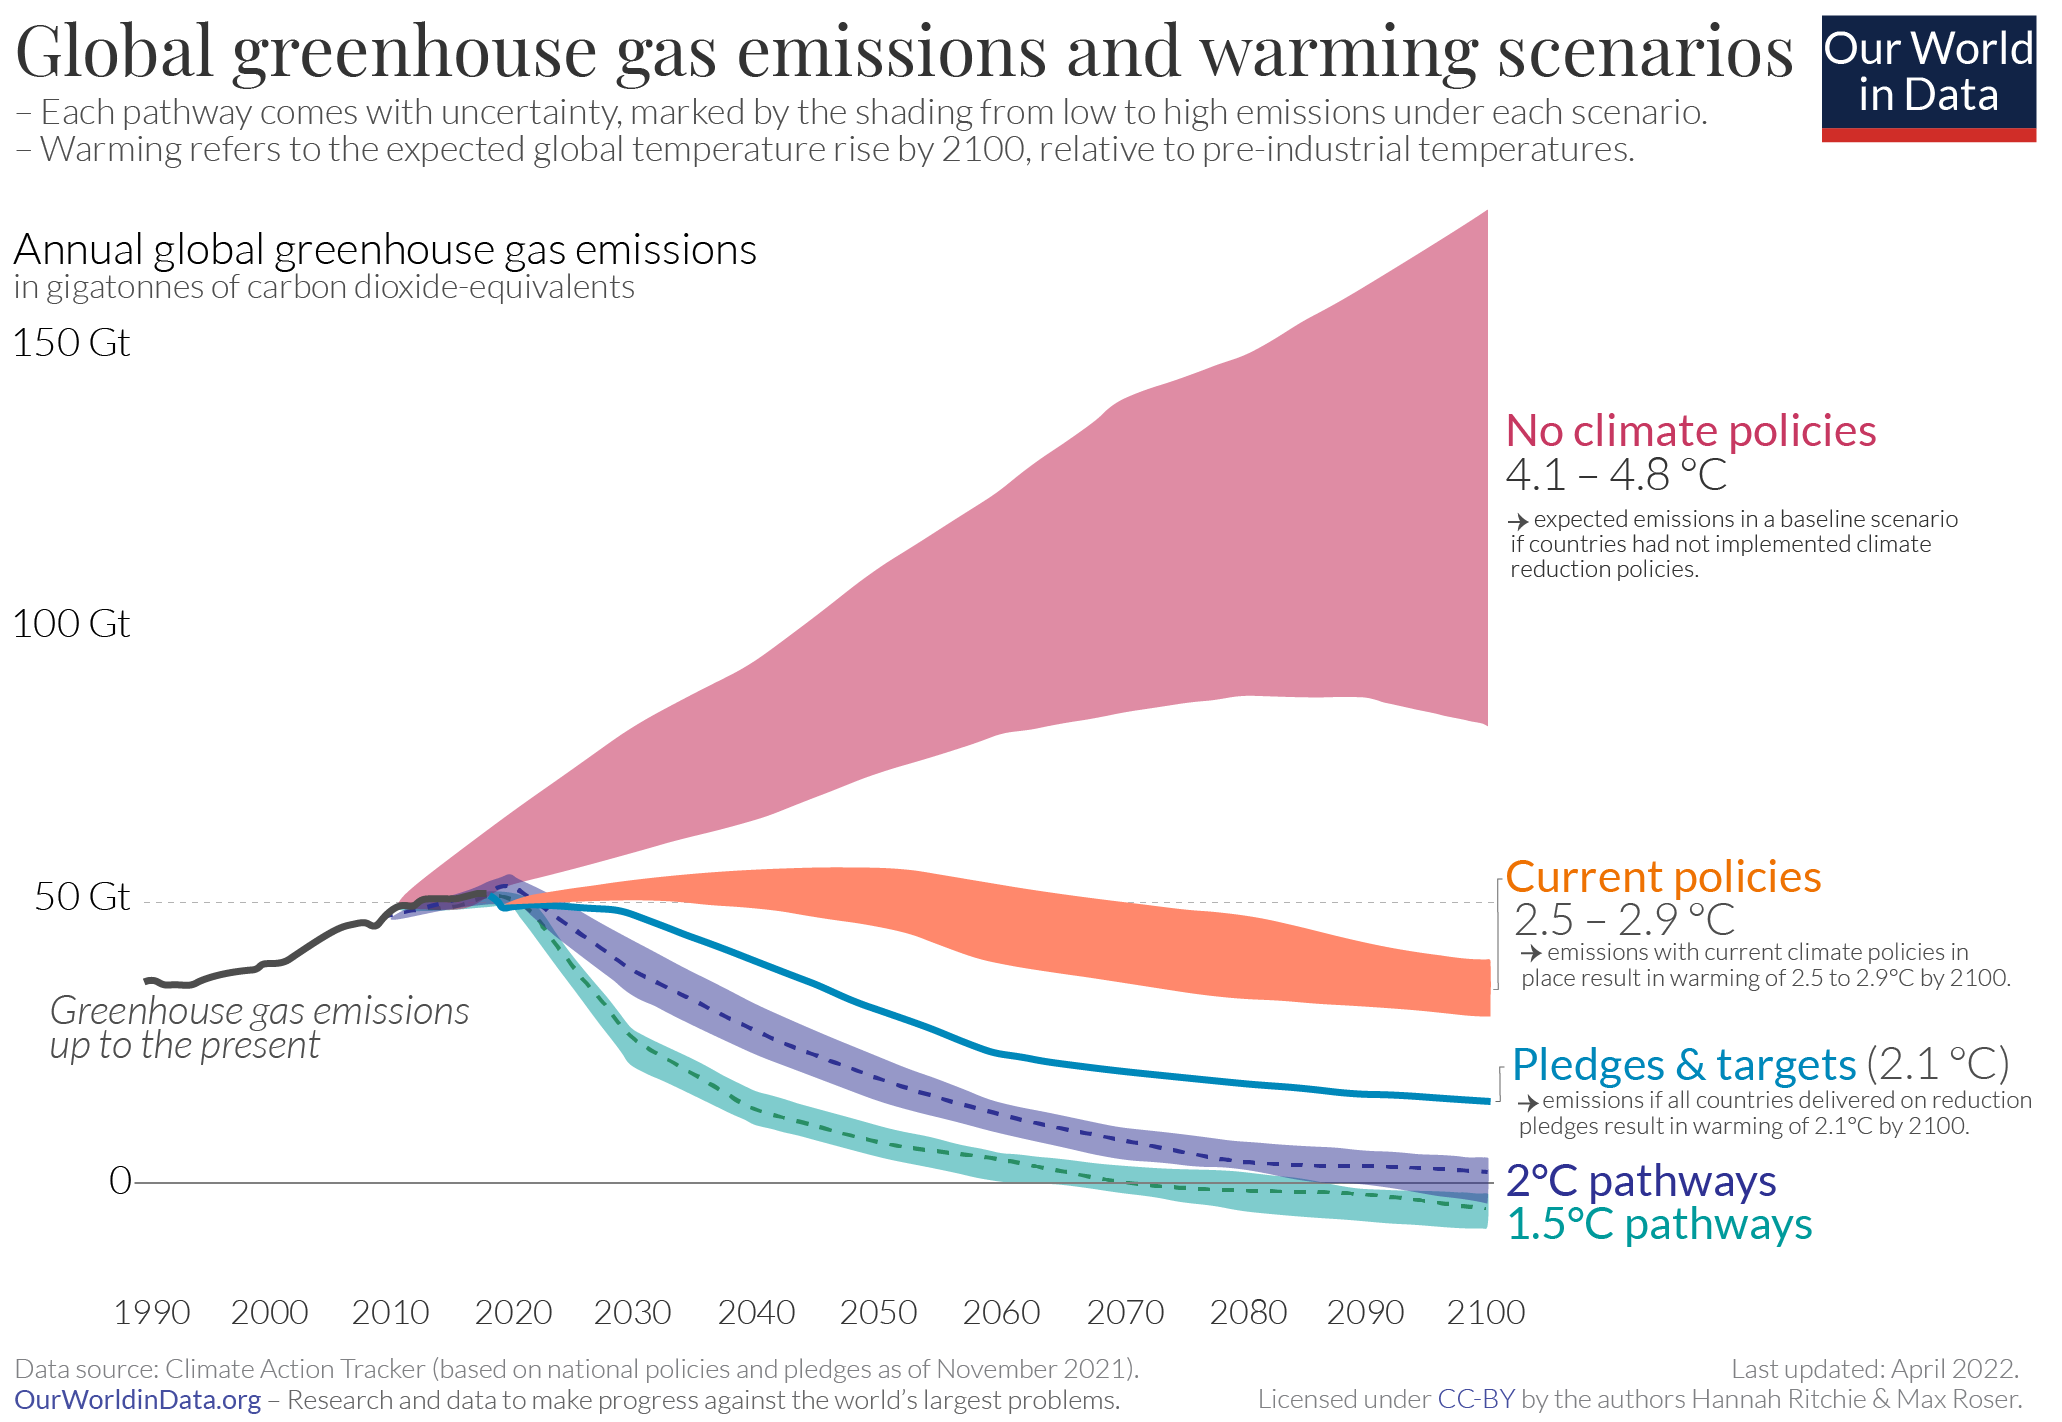 Emission scenarios for various emission trajectories